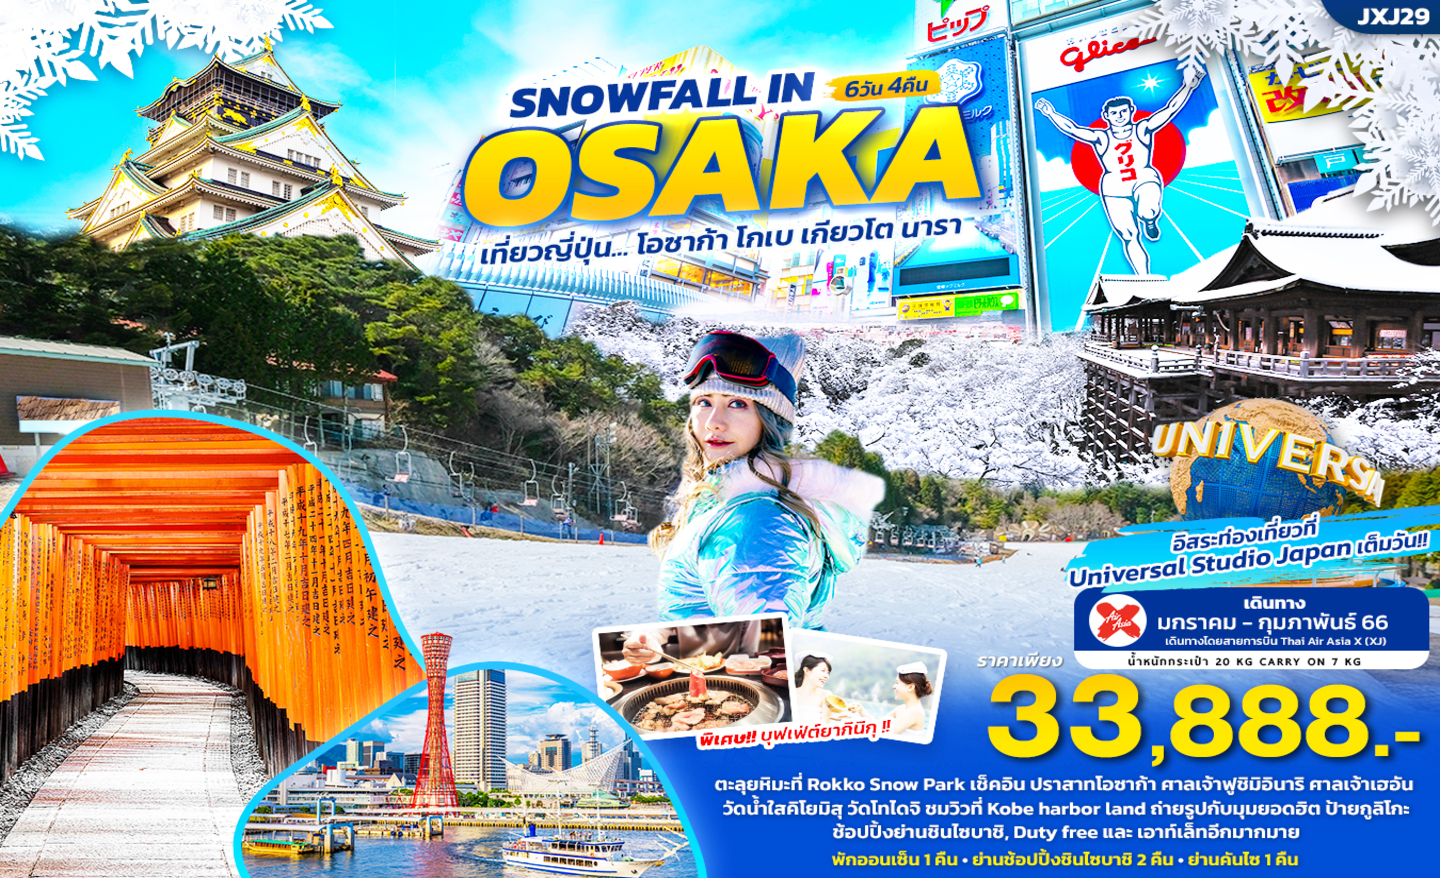 ทัวร์ญี่ปุ่น Snowfall In Osaka (ม.ค.-ก.พ66)